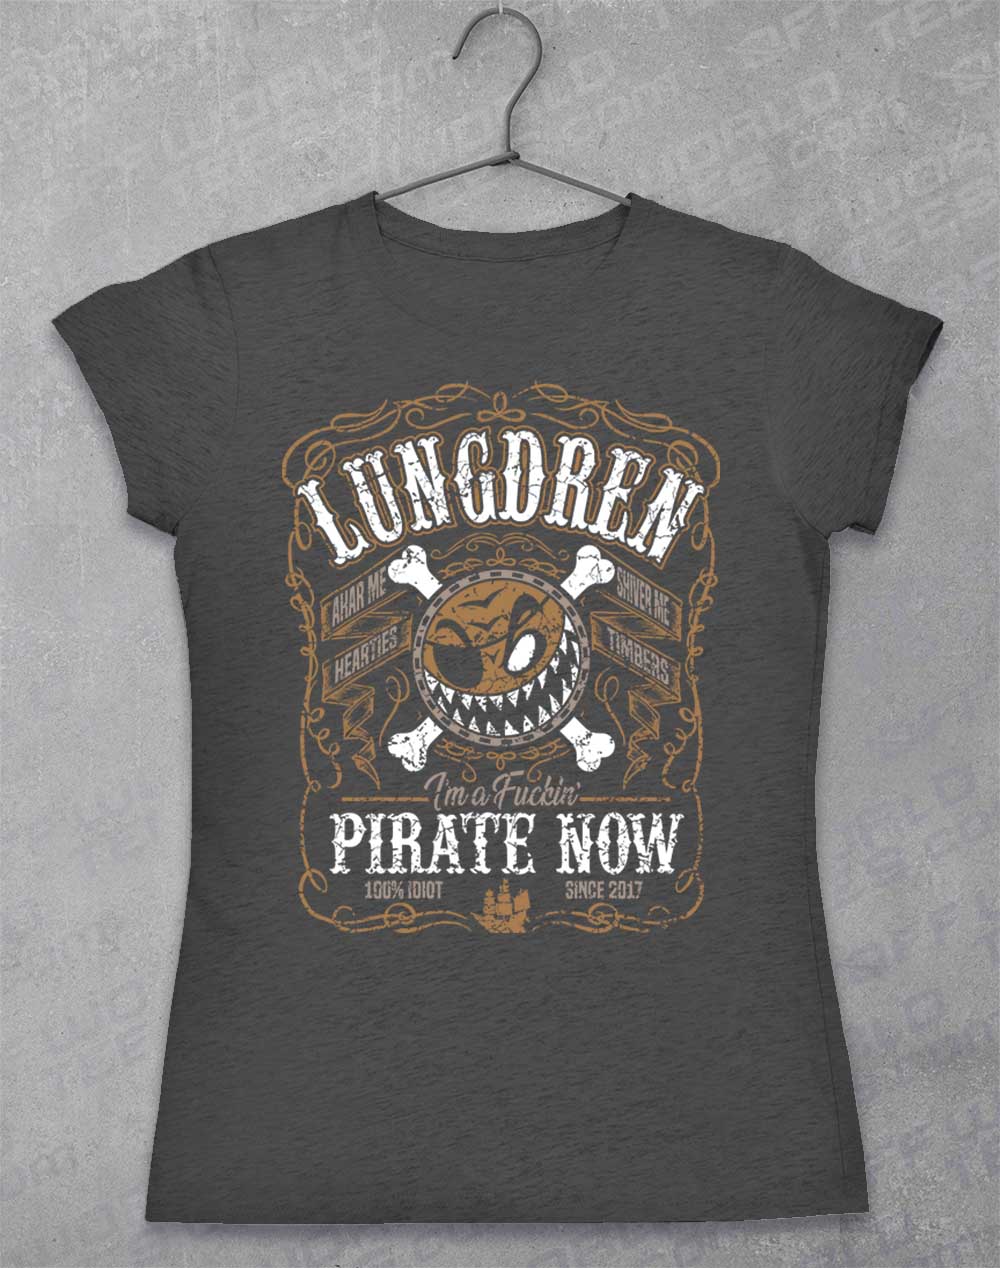 Dark Heather - LUNGDREN Pirate Now Women's T-Shirt